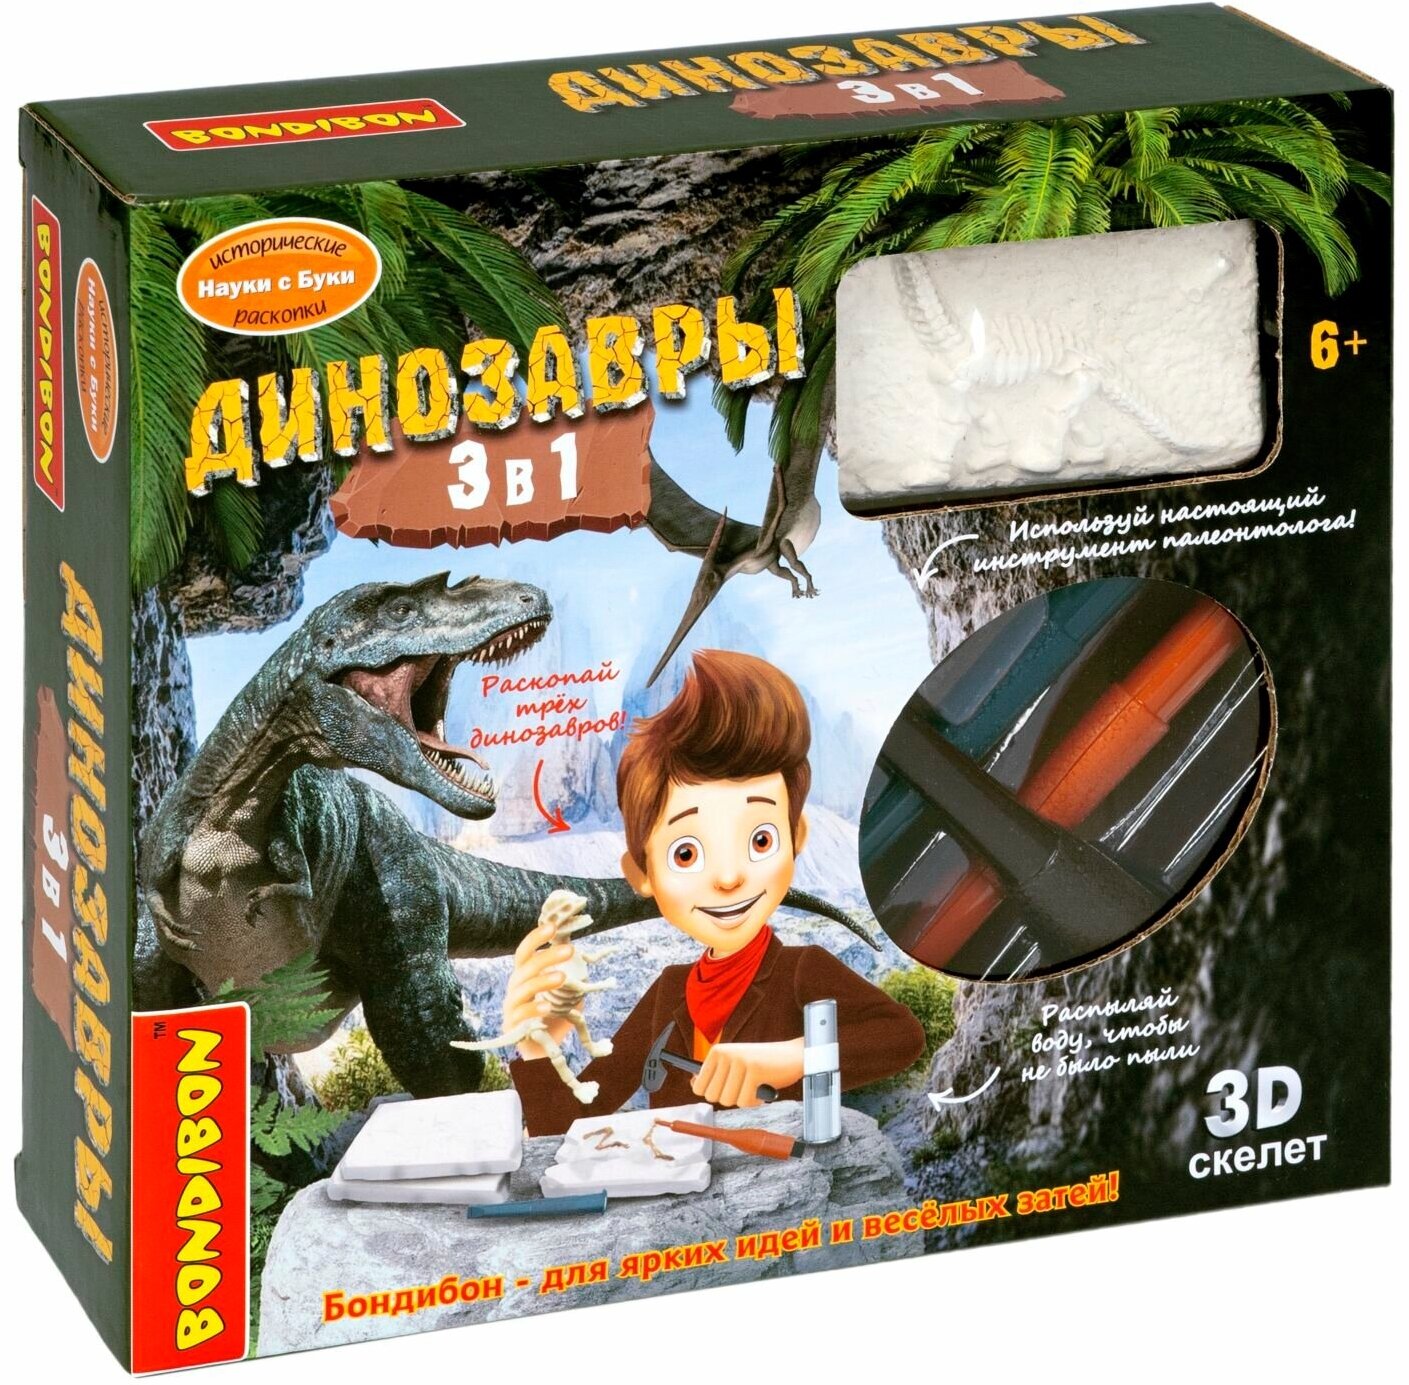 Раскопки для детей динозавры 3в1 Bondibon / стегозавр, брахиозавр, трицератопс / набор археолога для мальчиков и девочек